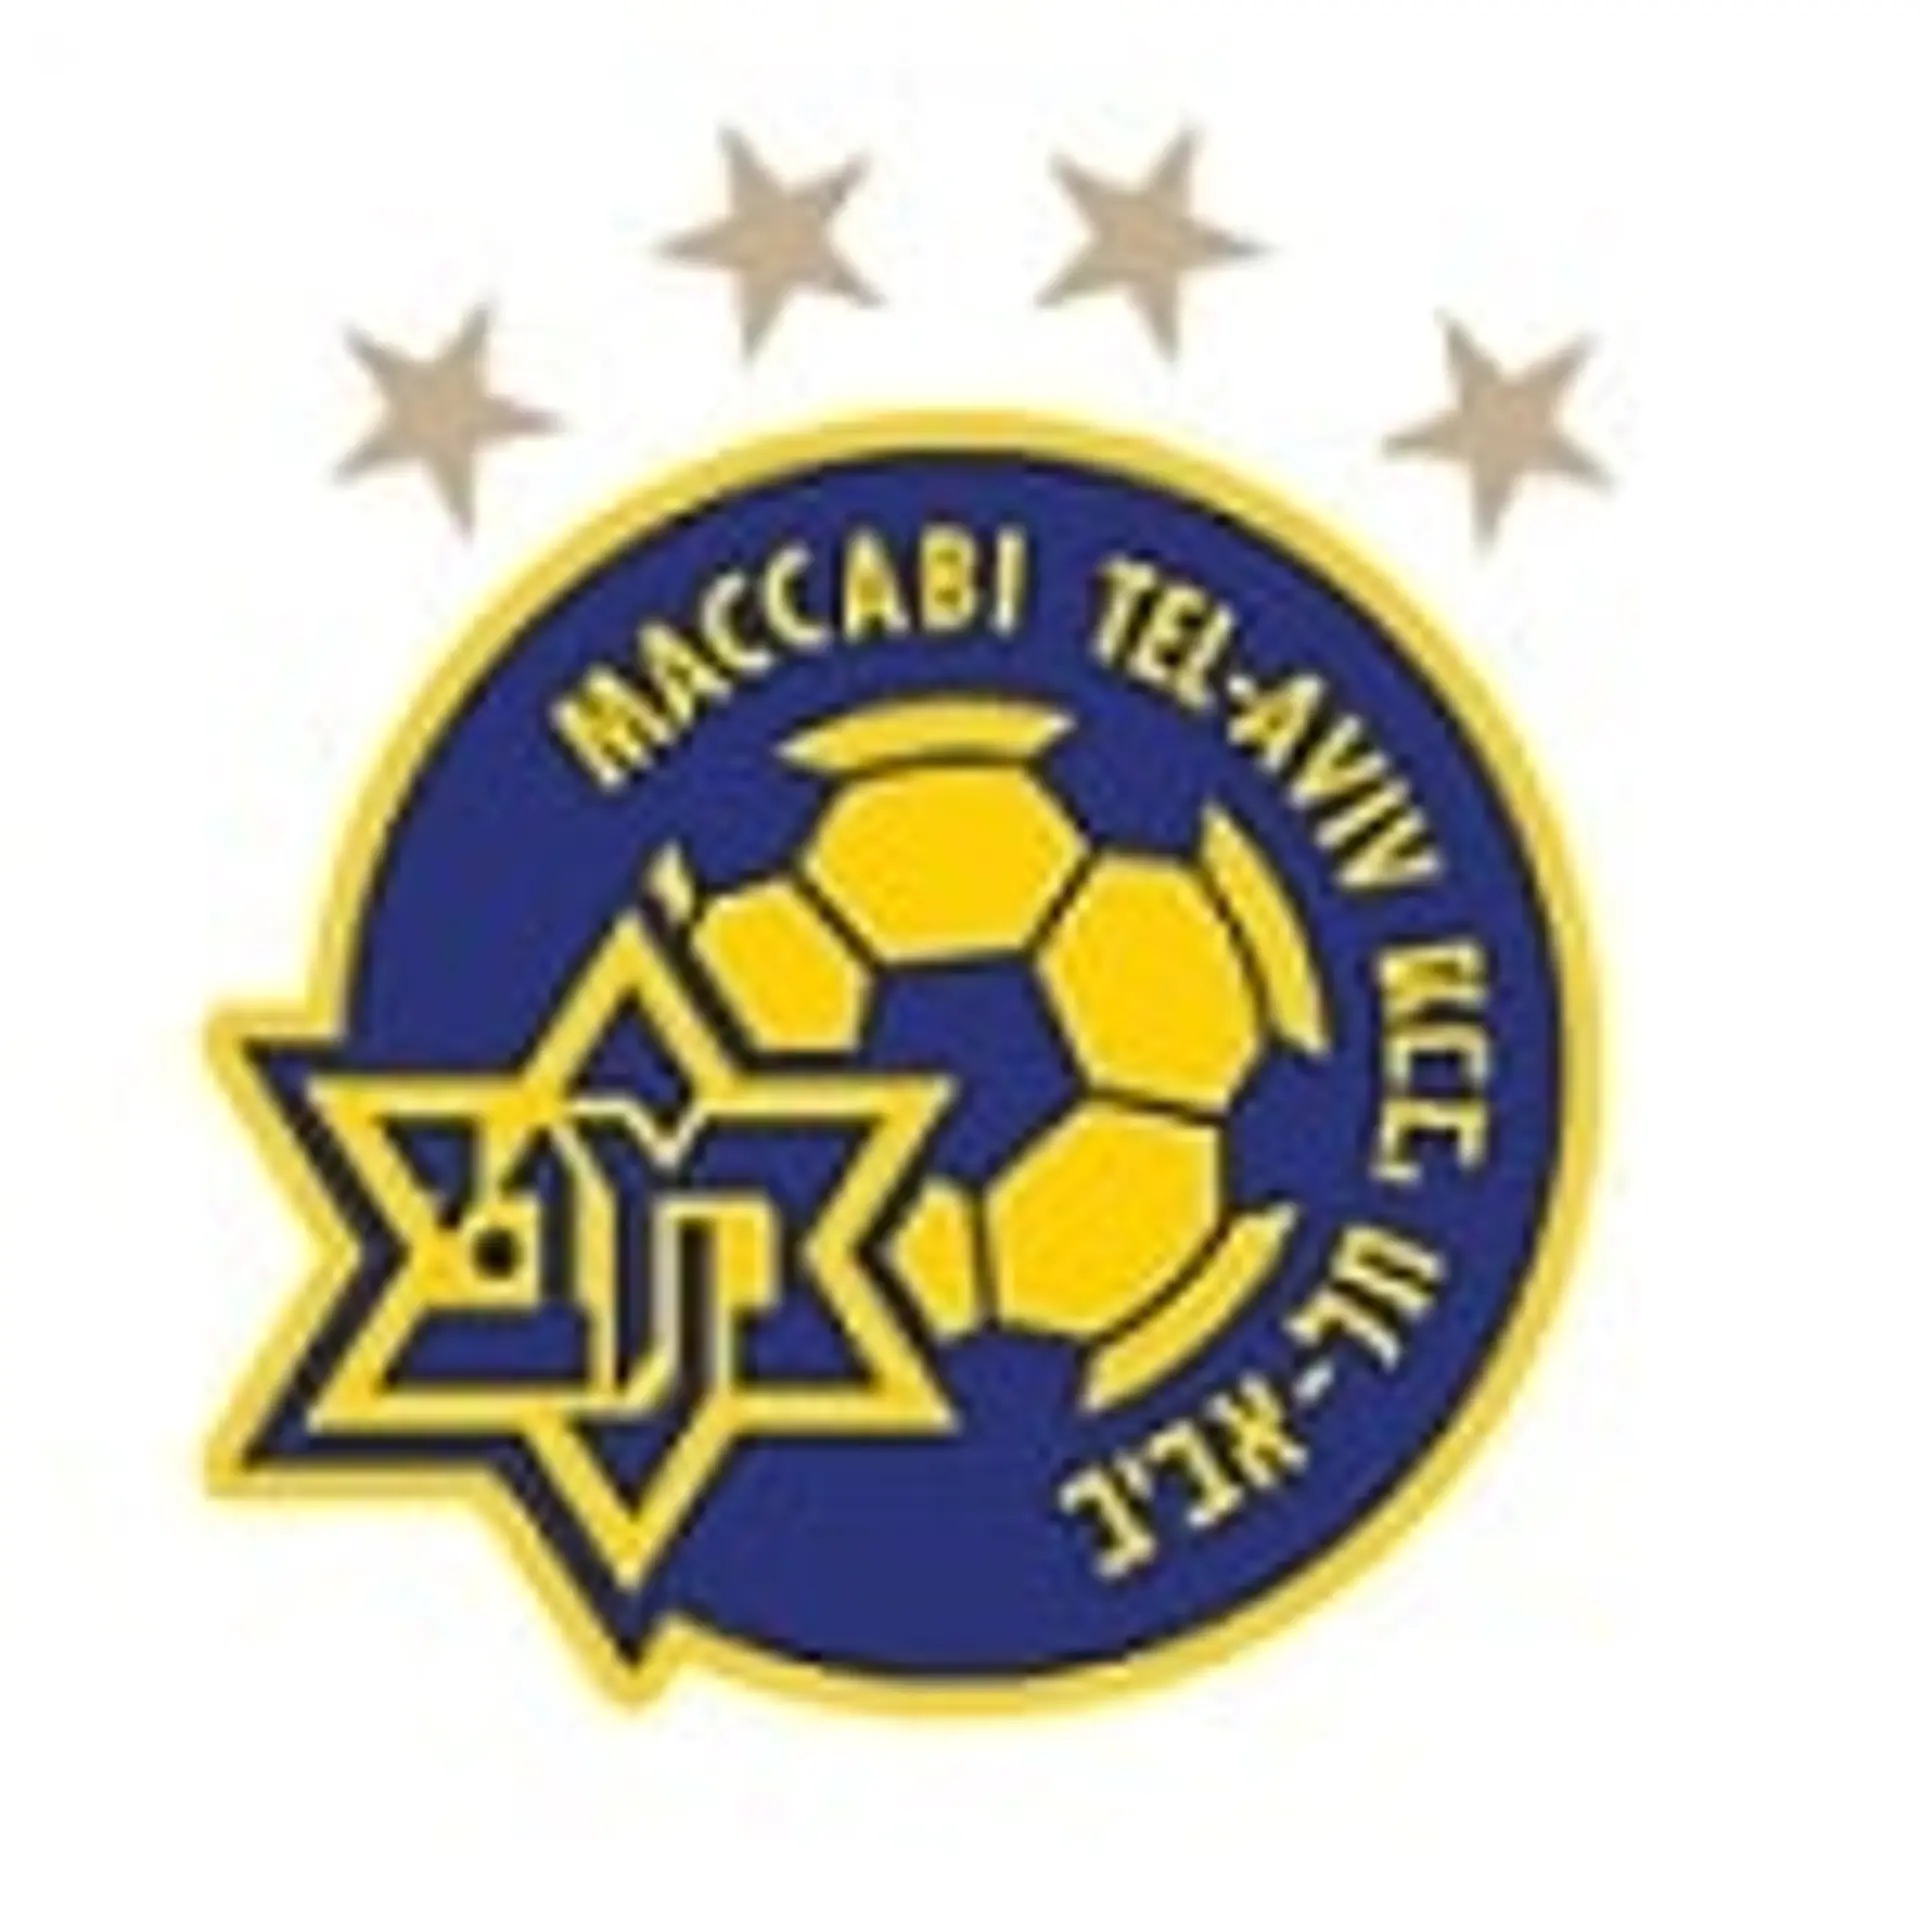 Maccabi Tel Aviv Squad